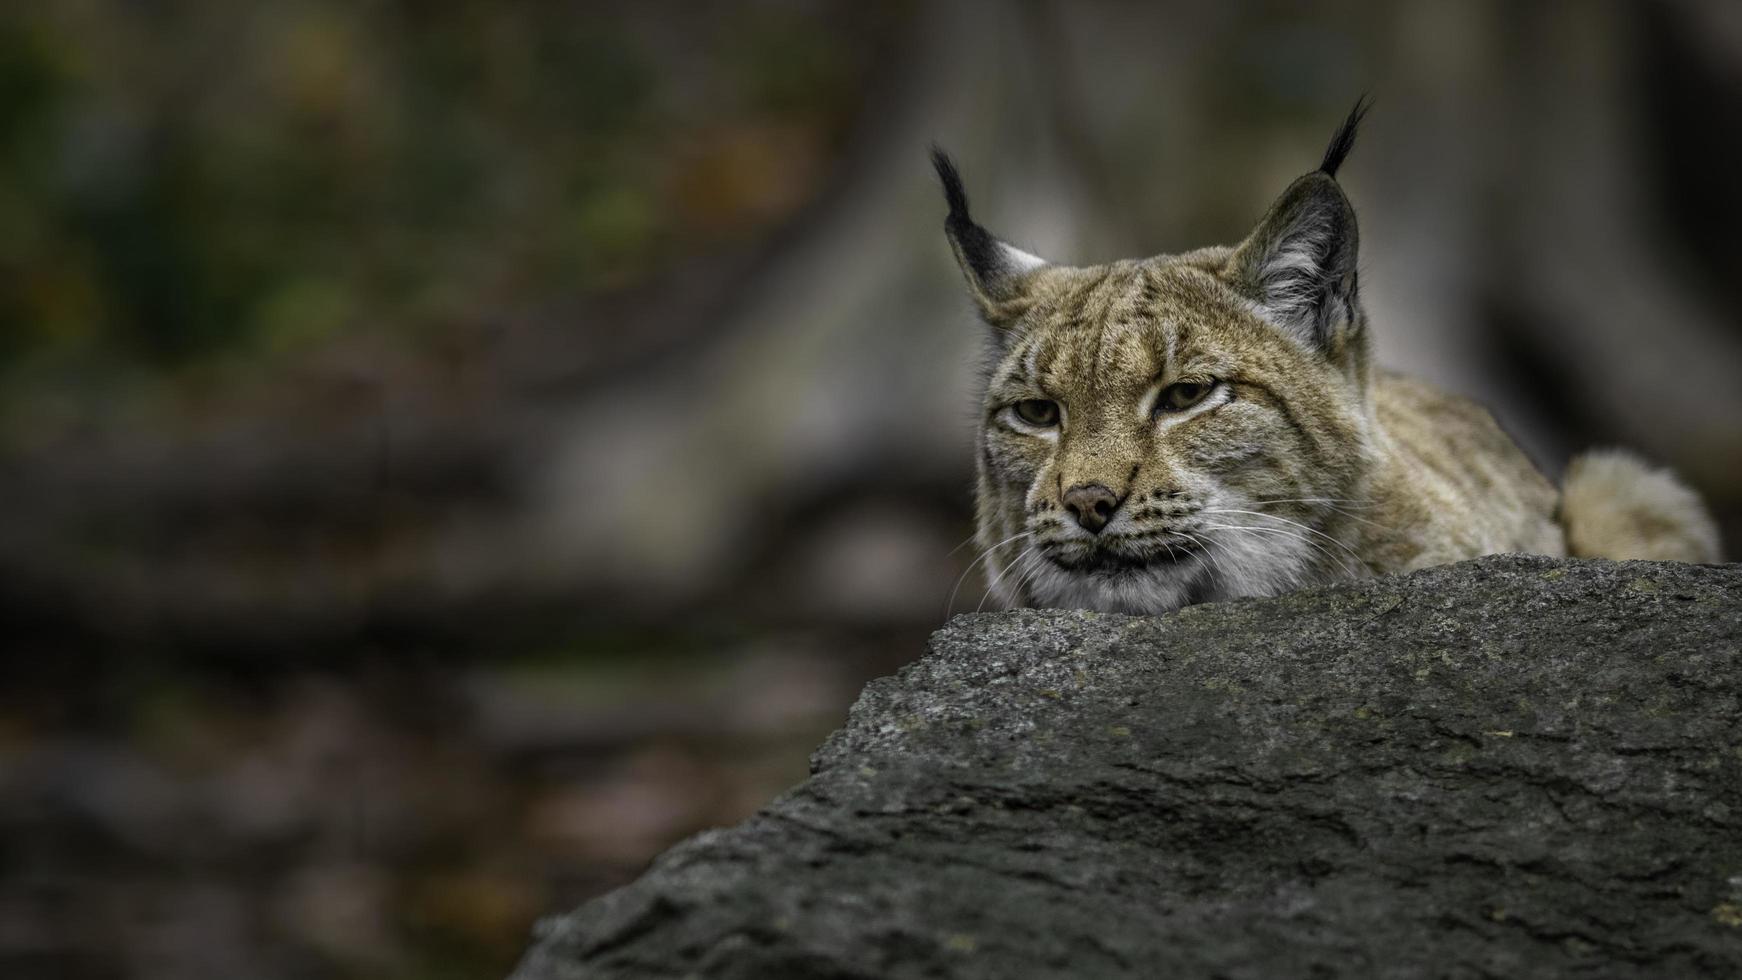 Portrait de lynx eurasien photo